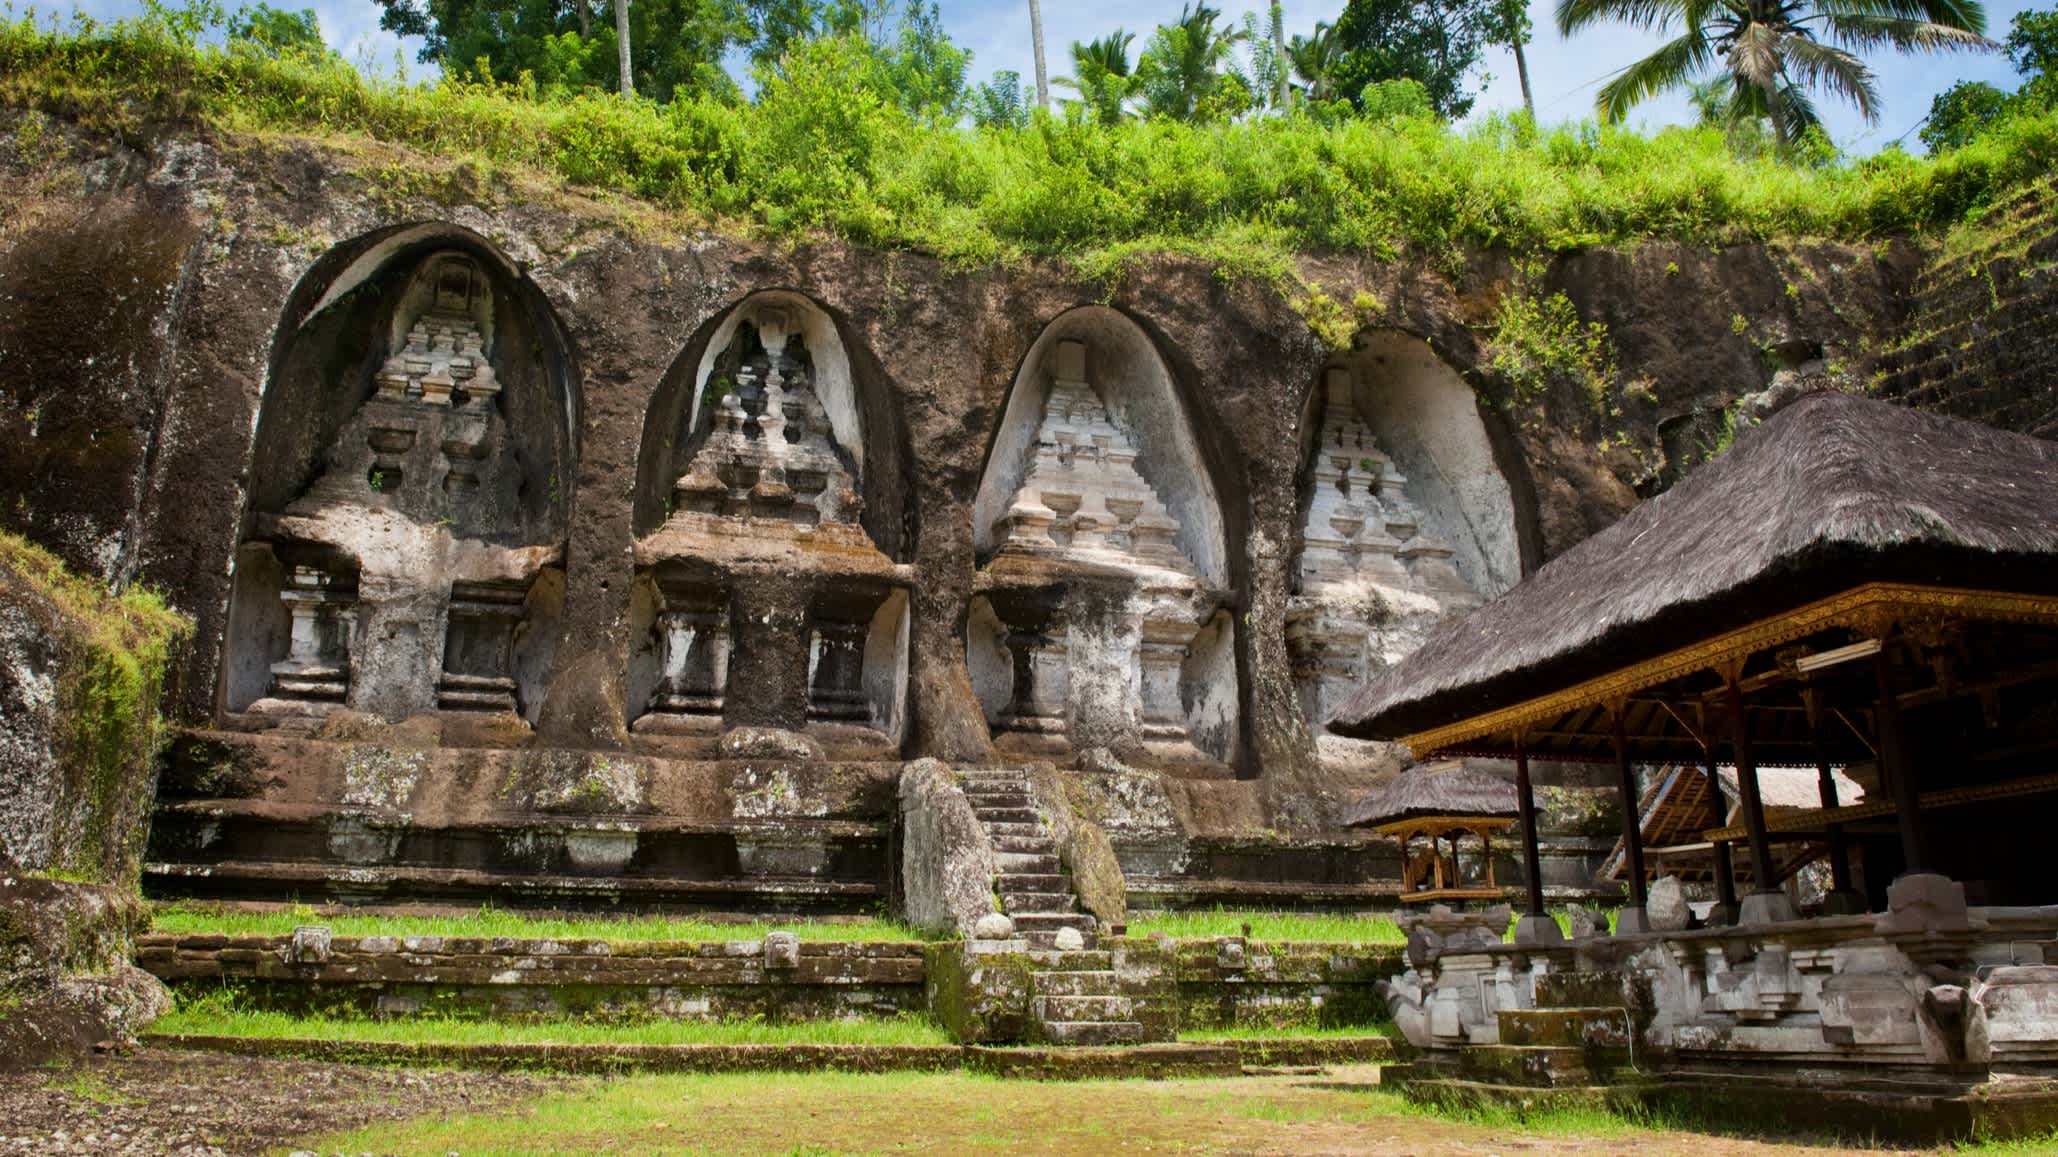 Tempelkomplex Gunung Kawi inmitten malerischer Reisterrassen, Ubud, Bali, Indonesien.

